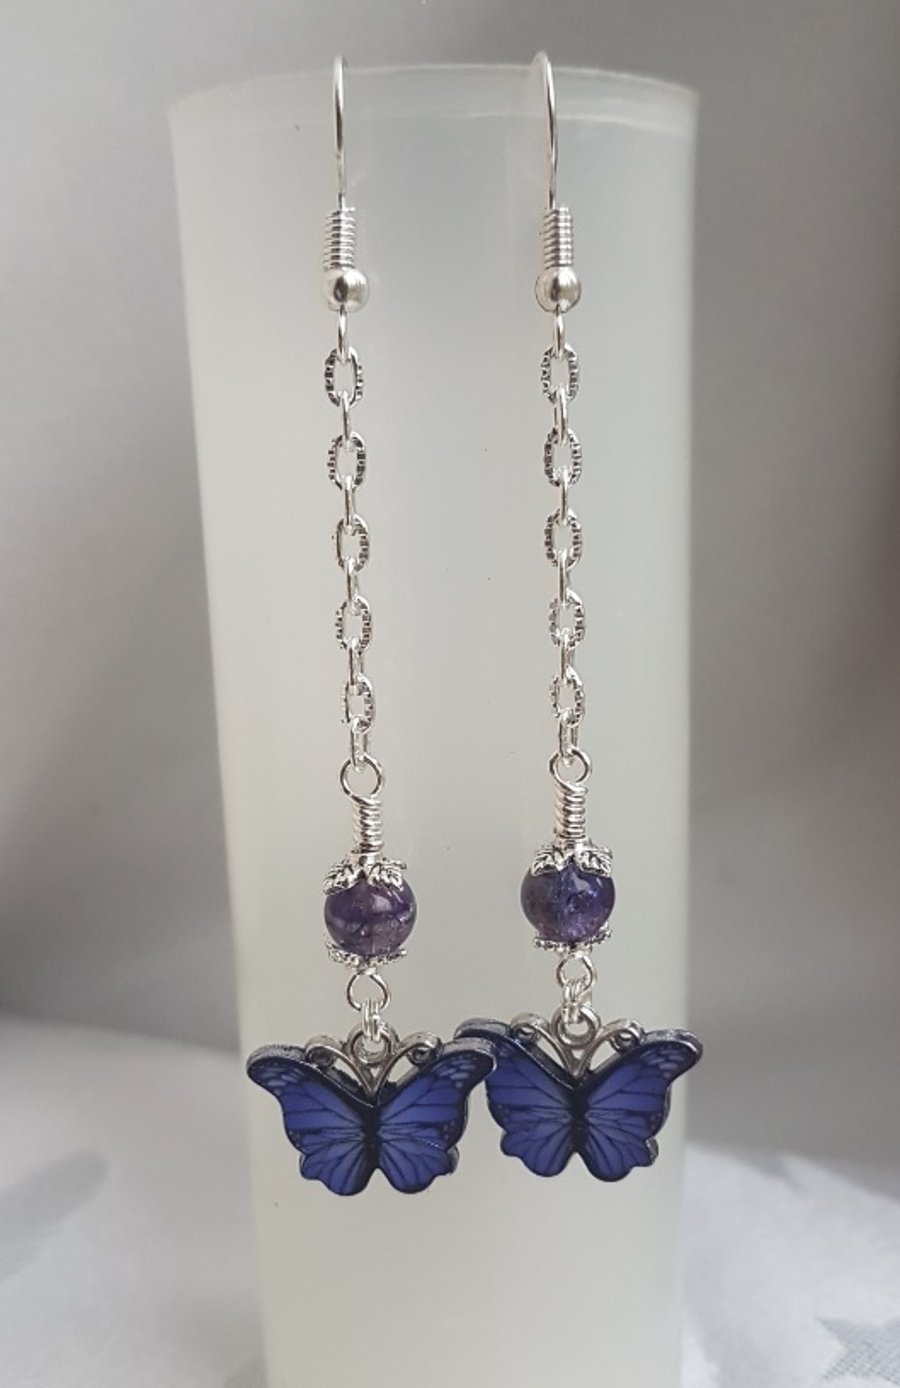 Gorgeous Dangly Purple Butterfly Earrings - Silver Tones.